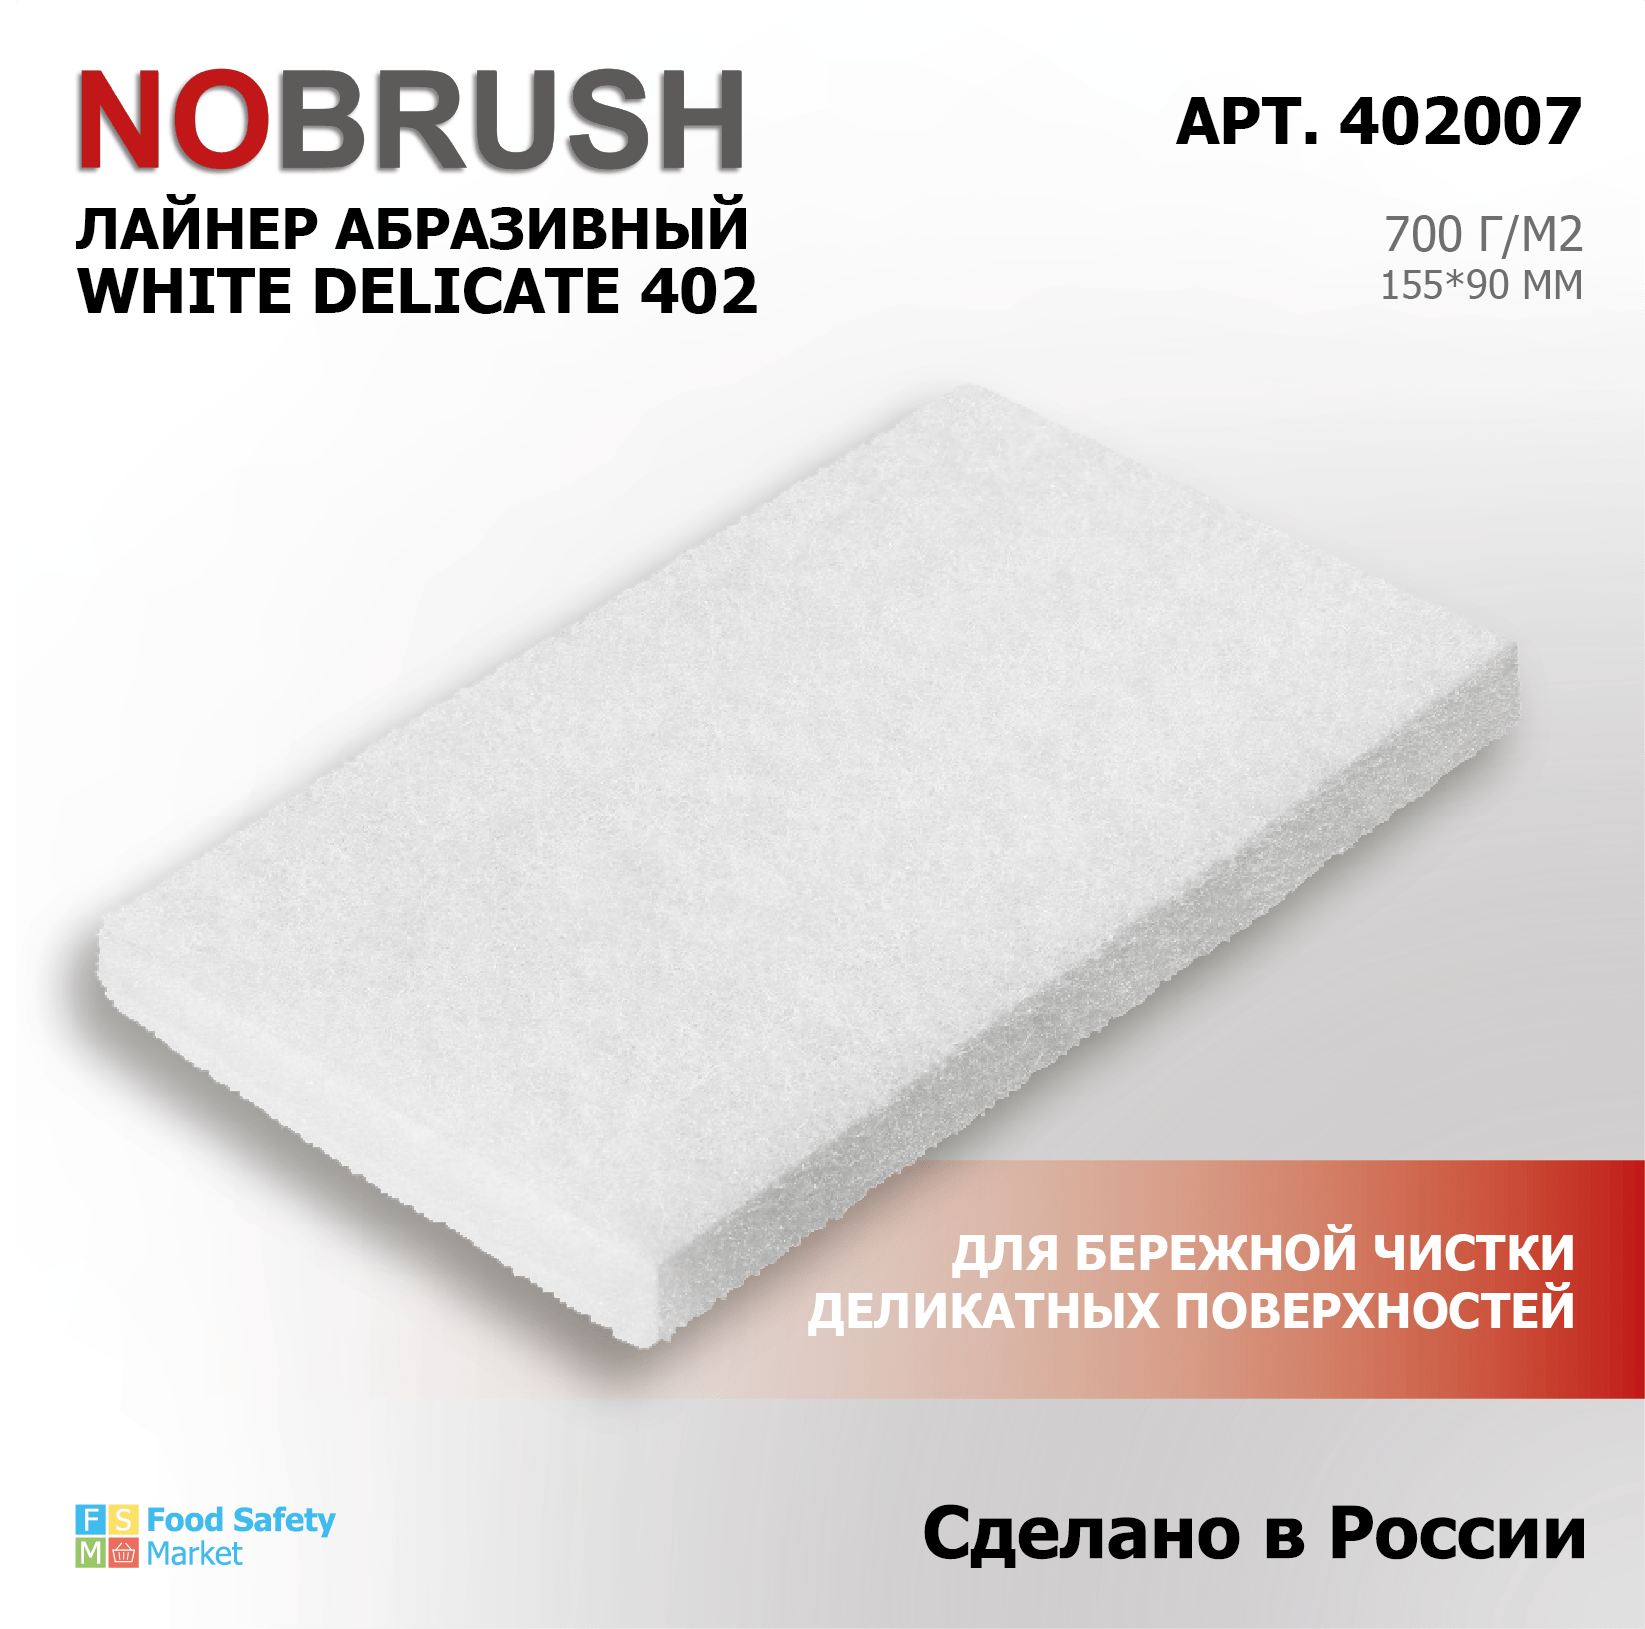 Лайнер абразивный HACCPER NOBRUSH 402 White Delicate для очистки деликатных поверхностей, 90*155мм